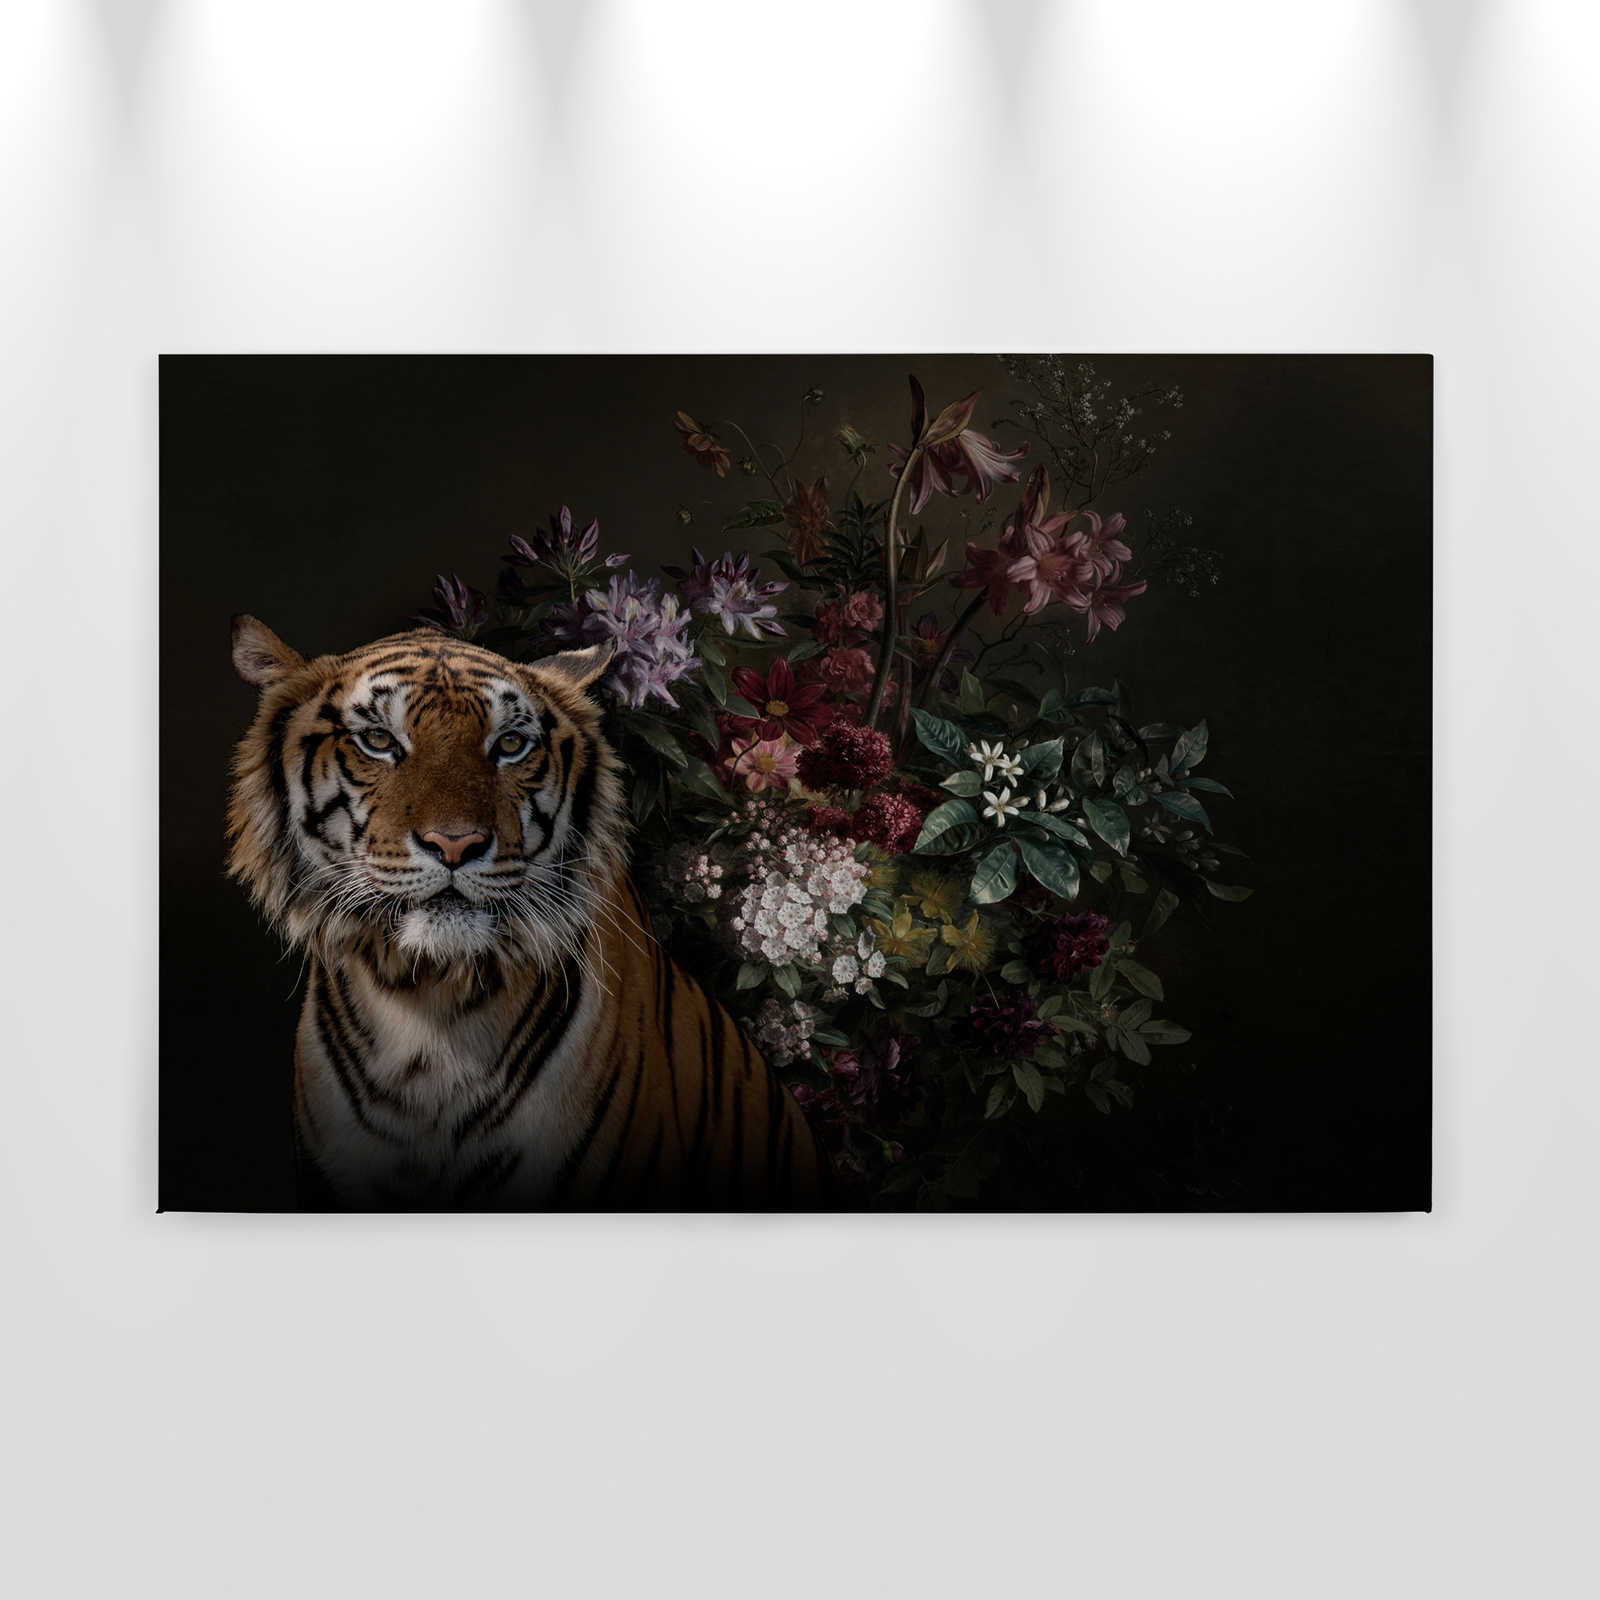             Toile Portrait de tigre avec fleurs - 0,90 m x 0,60 m
        